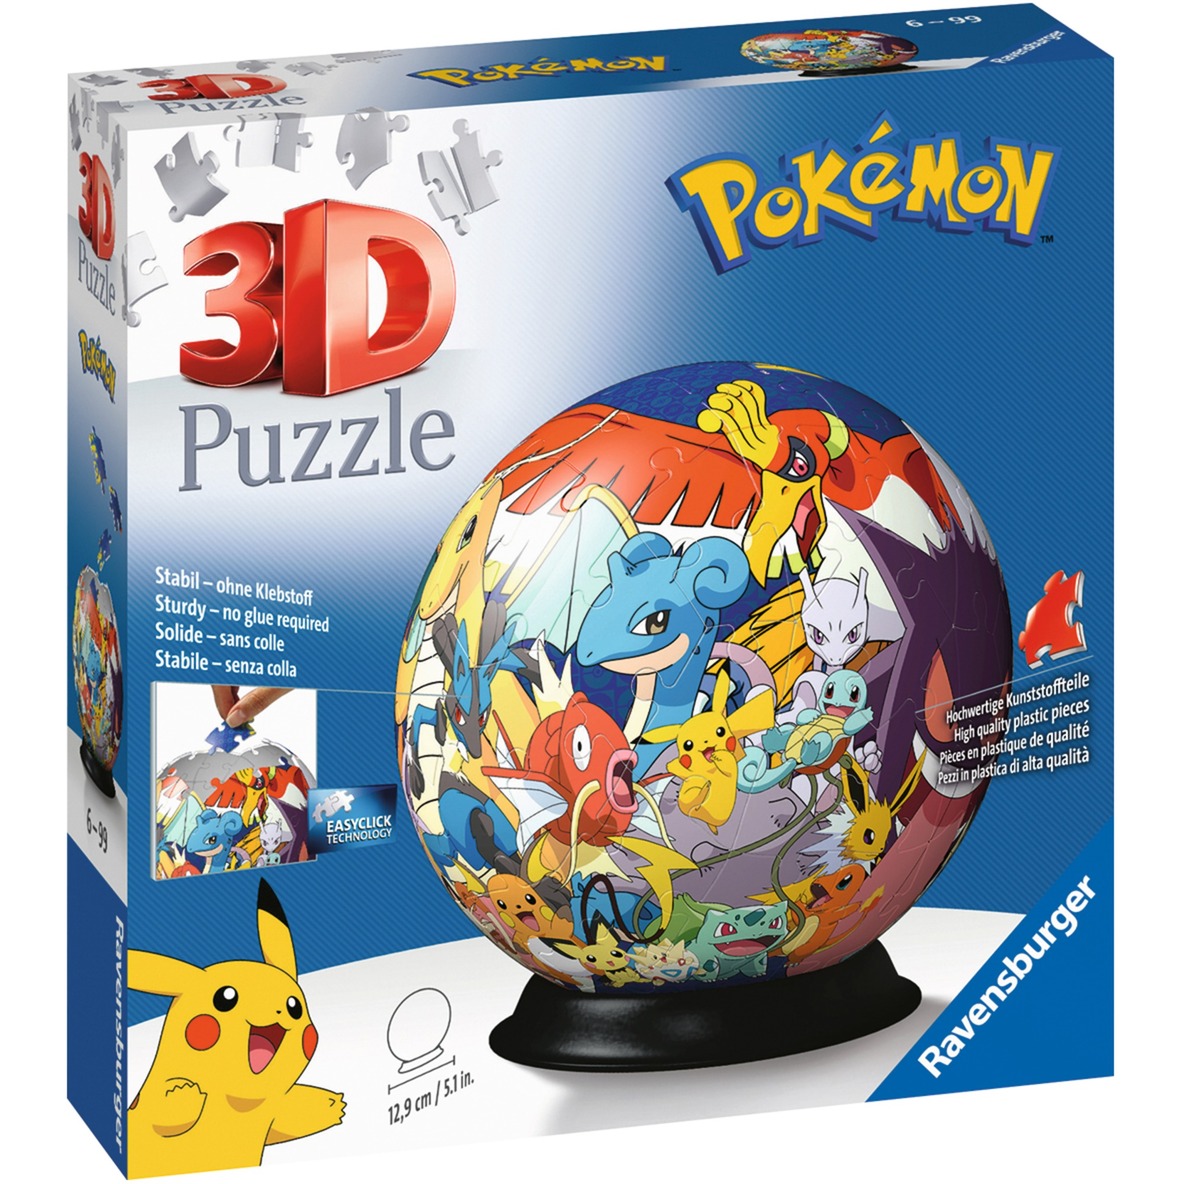 Image of Alternate - 3D Puzzle-Ball Pokémon online einkaufen bei Alternate